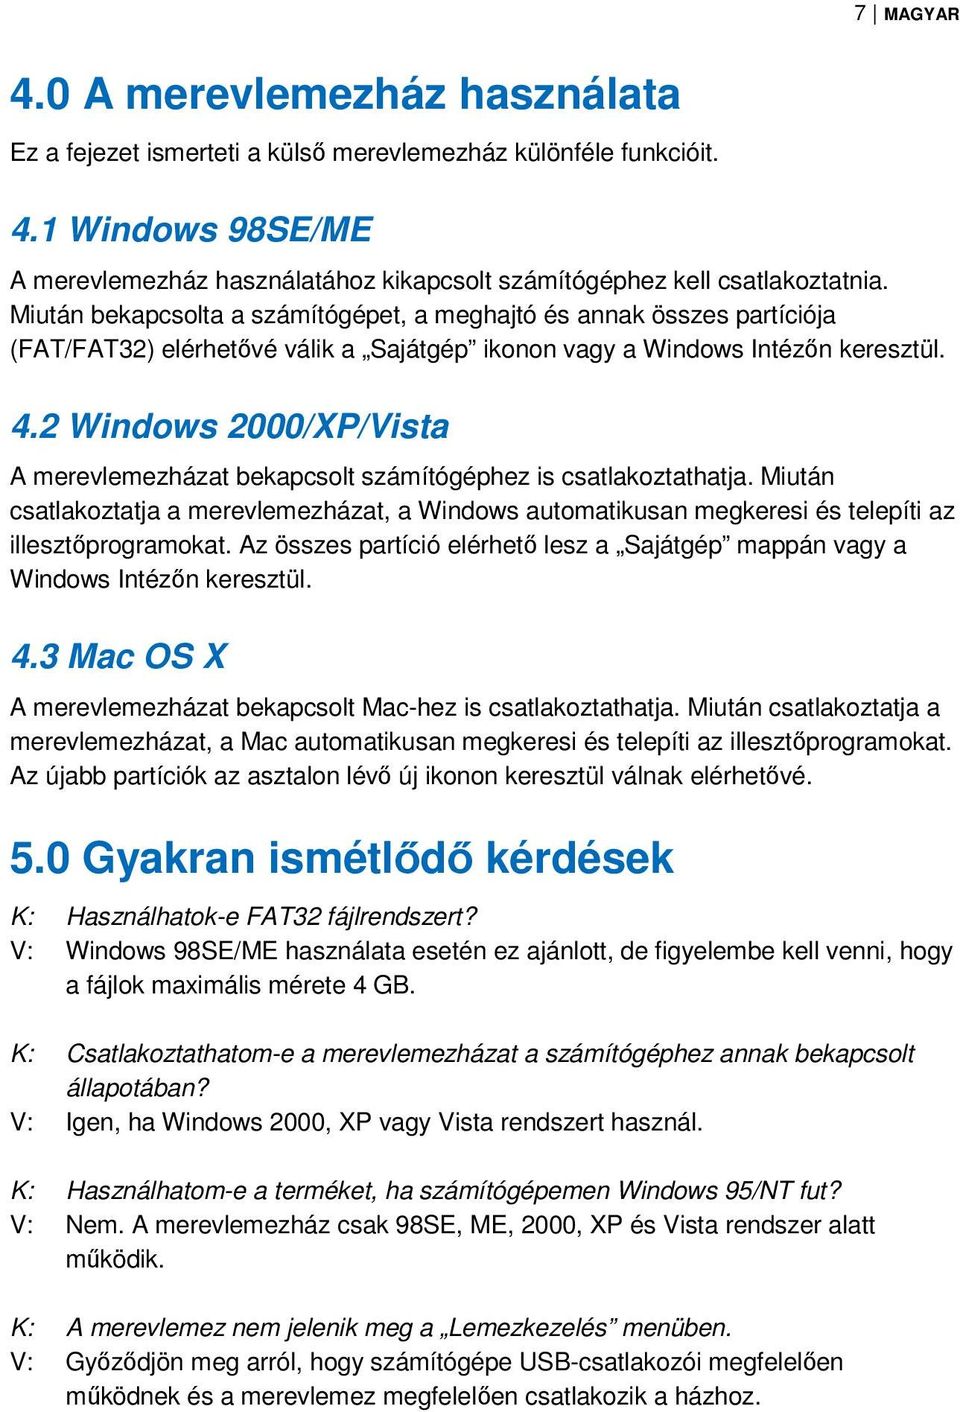 2 Windows 2000/XP/Vista A merevlemezházat bekapcsolt számítógéphez is csatlakoztathatja. Miután csatlakoztatja a merevlemezházat, a Windows automatikusan megkeresi és telepíti az illesztőprogramokat.